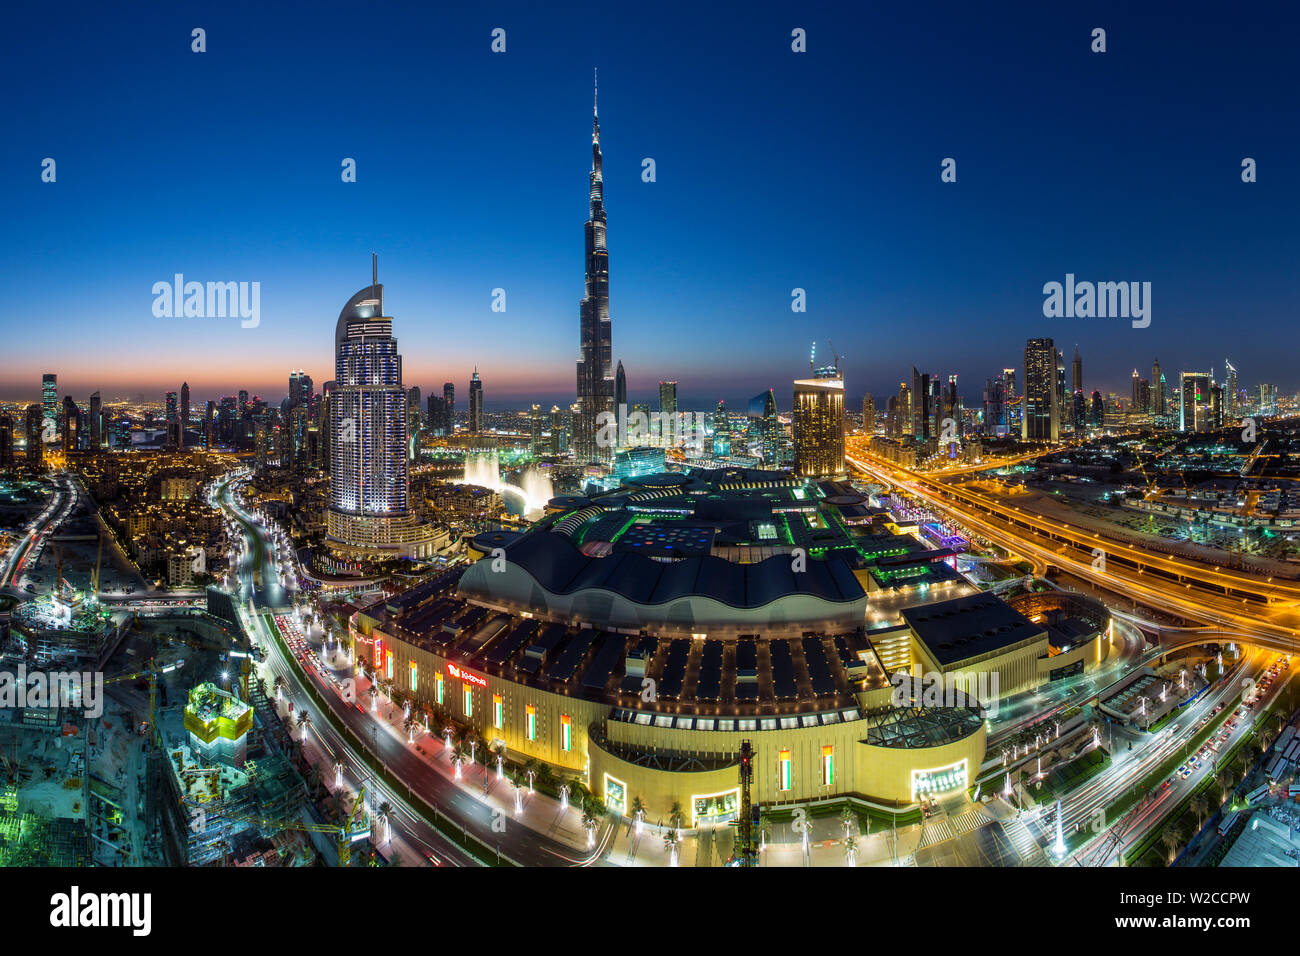 United Arab Emirates, Dubai, the Burj Khalifa, elevated view looking over the Dubai Mall Stock Photo